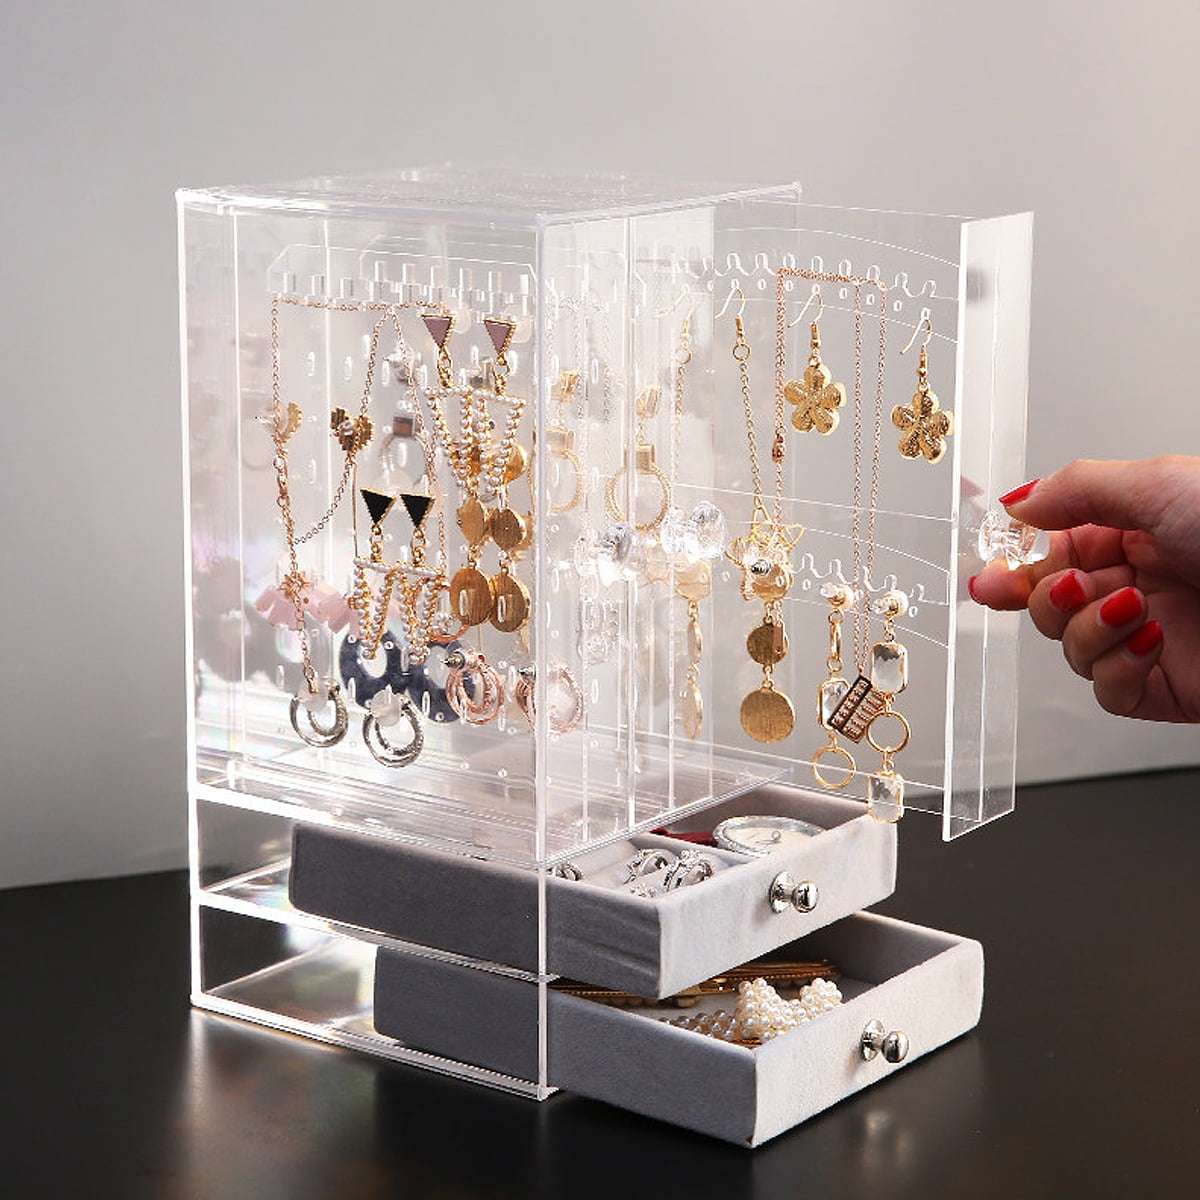 Proglam New Jewelry Organizer Jewelry Display Stand Clear 3 Tray Acrylic Earring Bracelet Necklace Display Stand Shelf